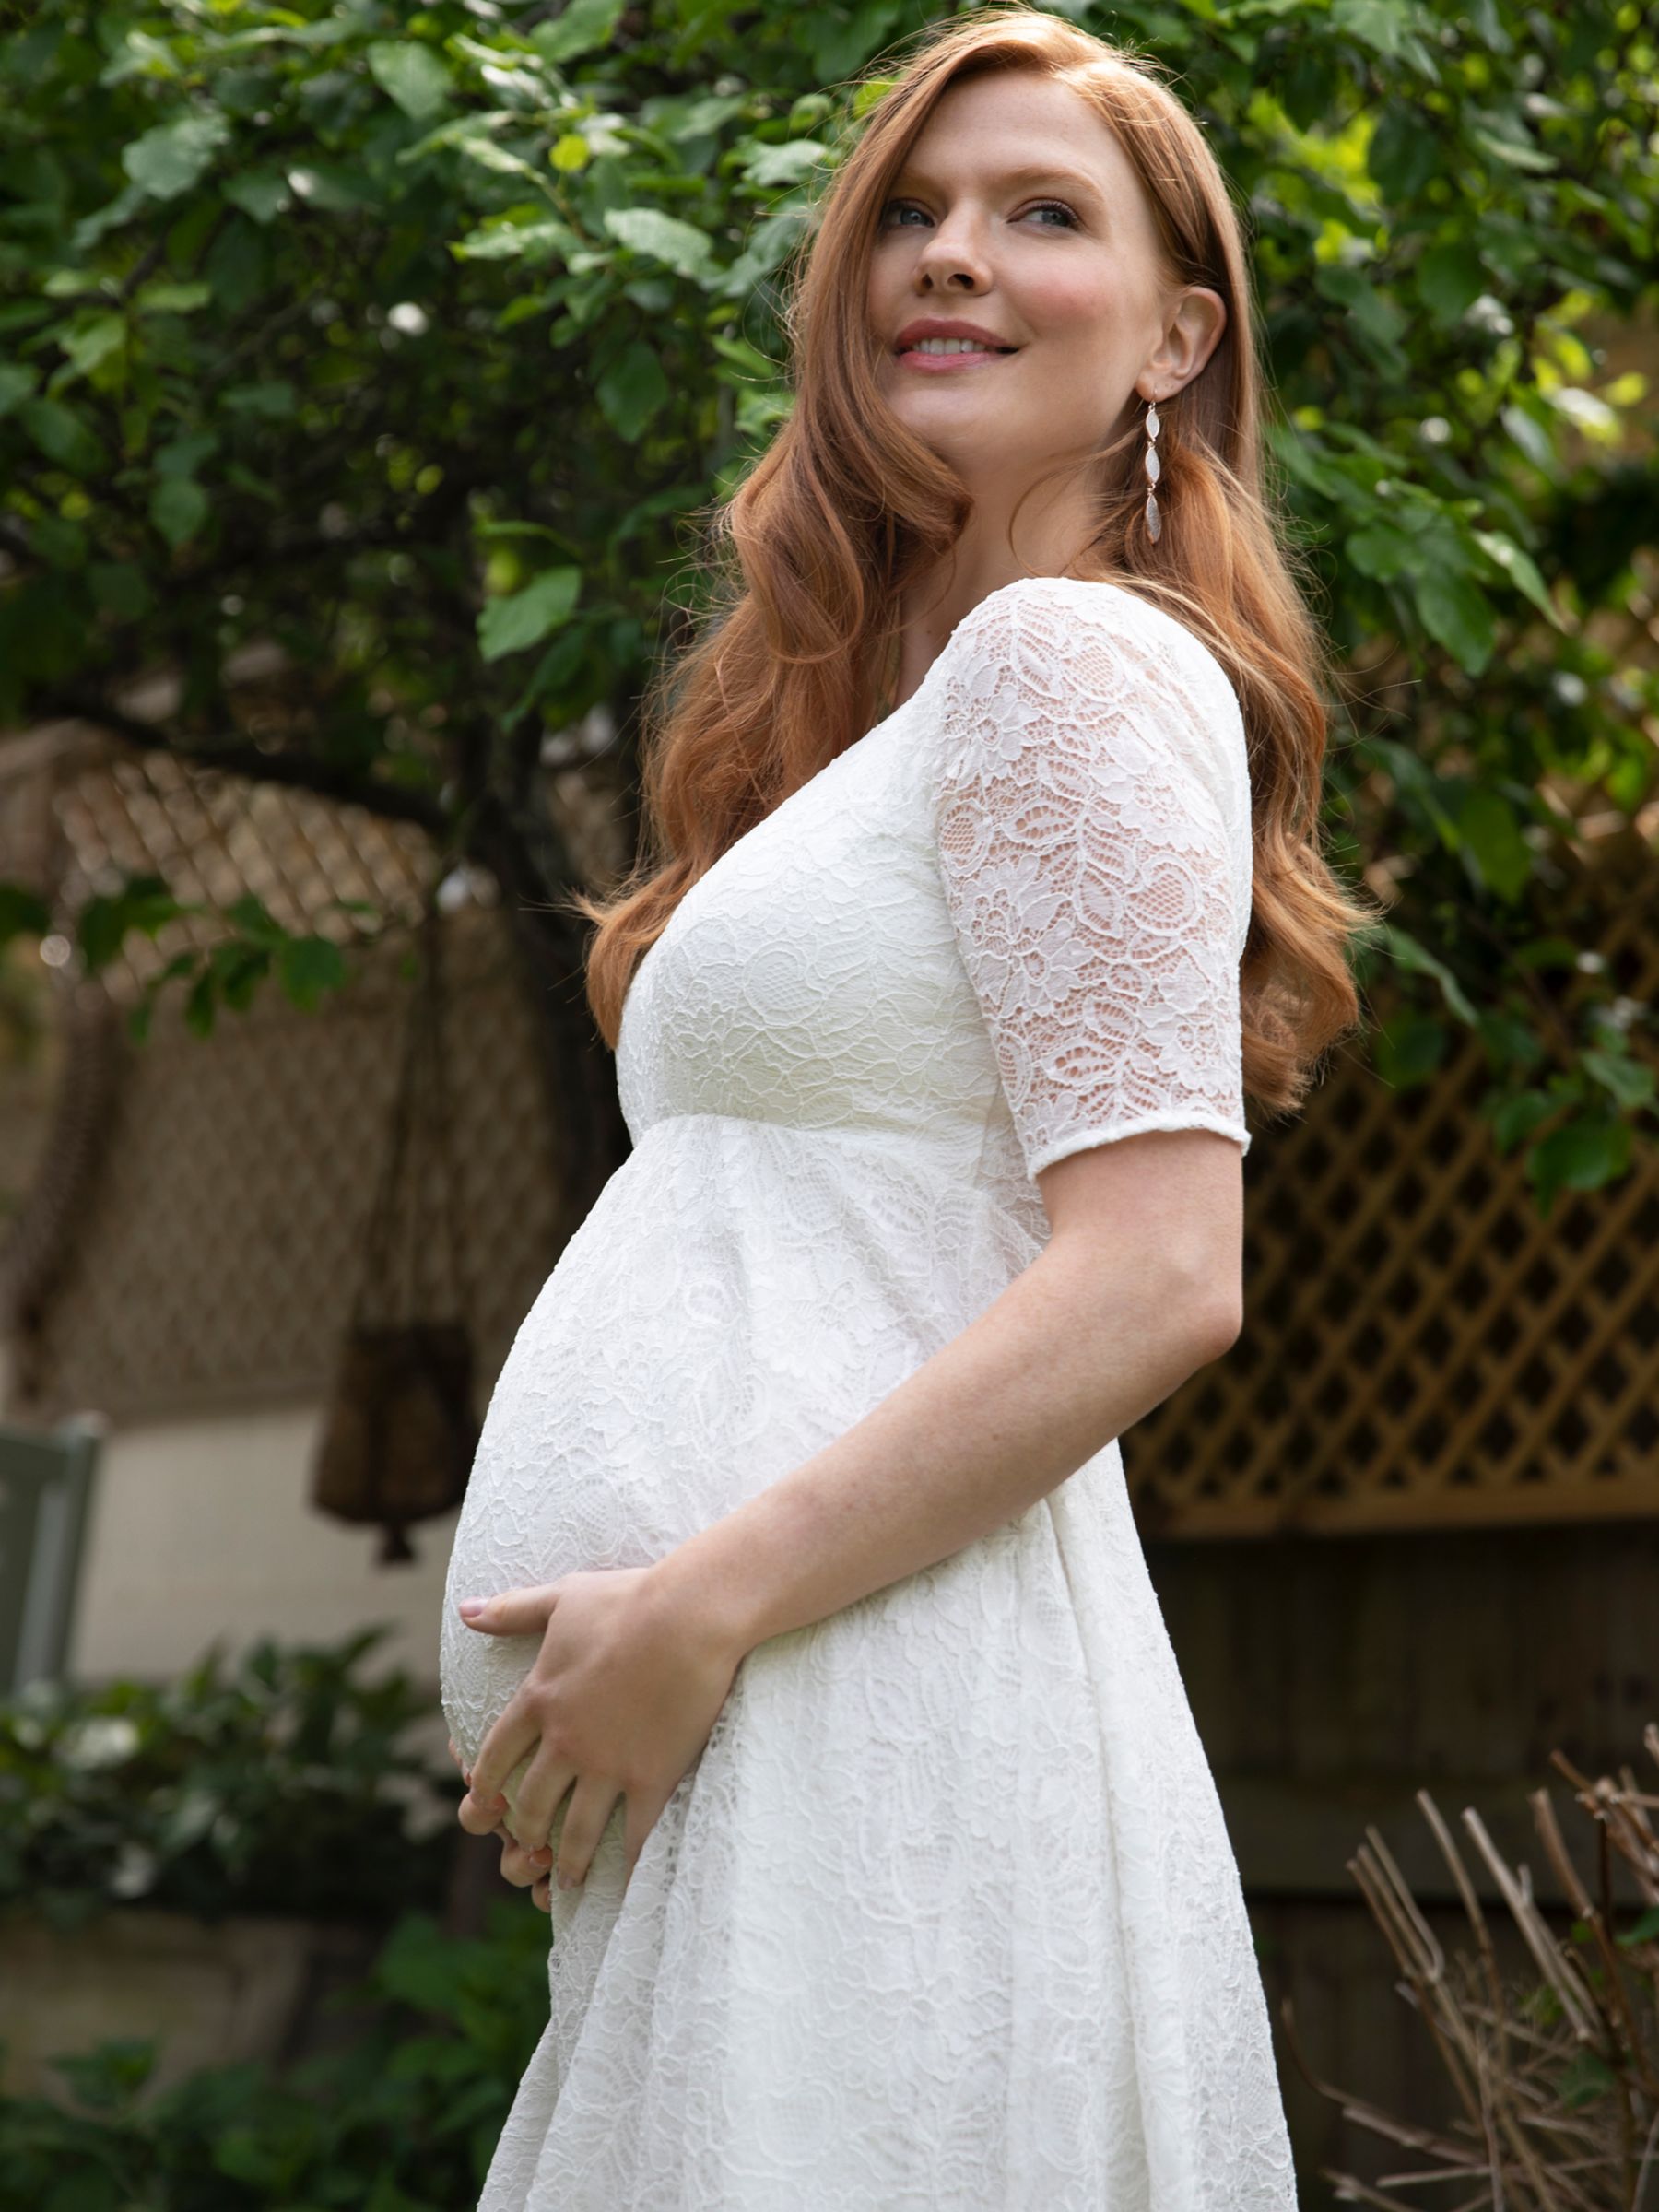 Tiffany Rose Hailey Asymmetric Maternity Dress, Ivory, 6-8